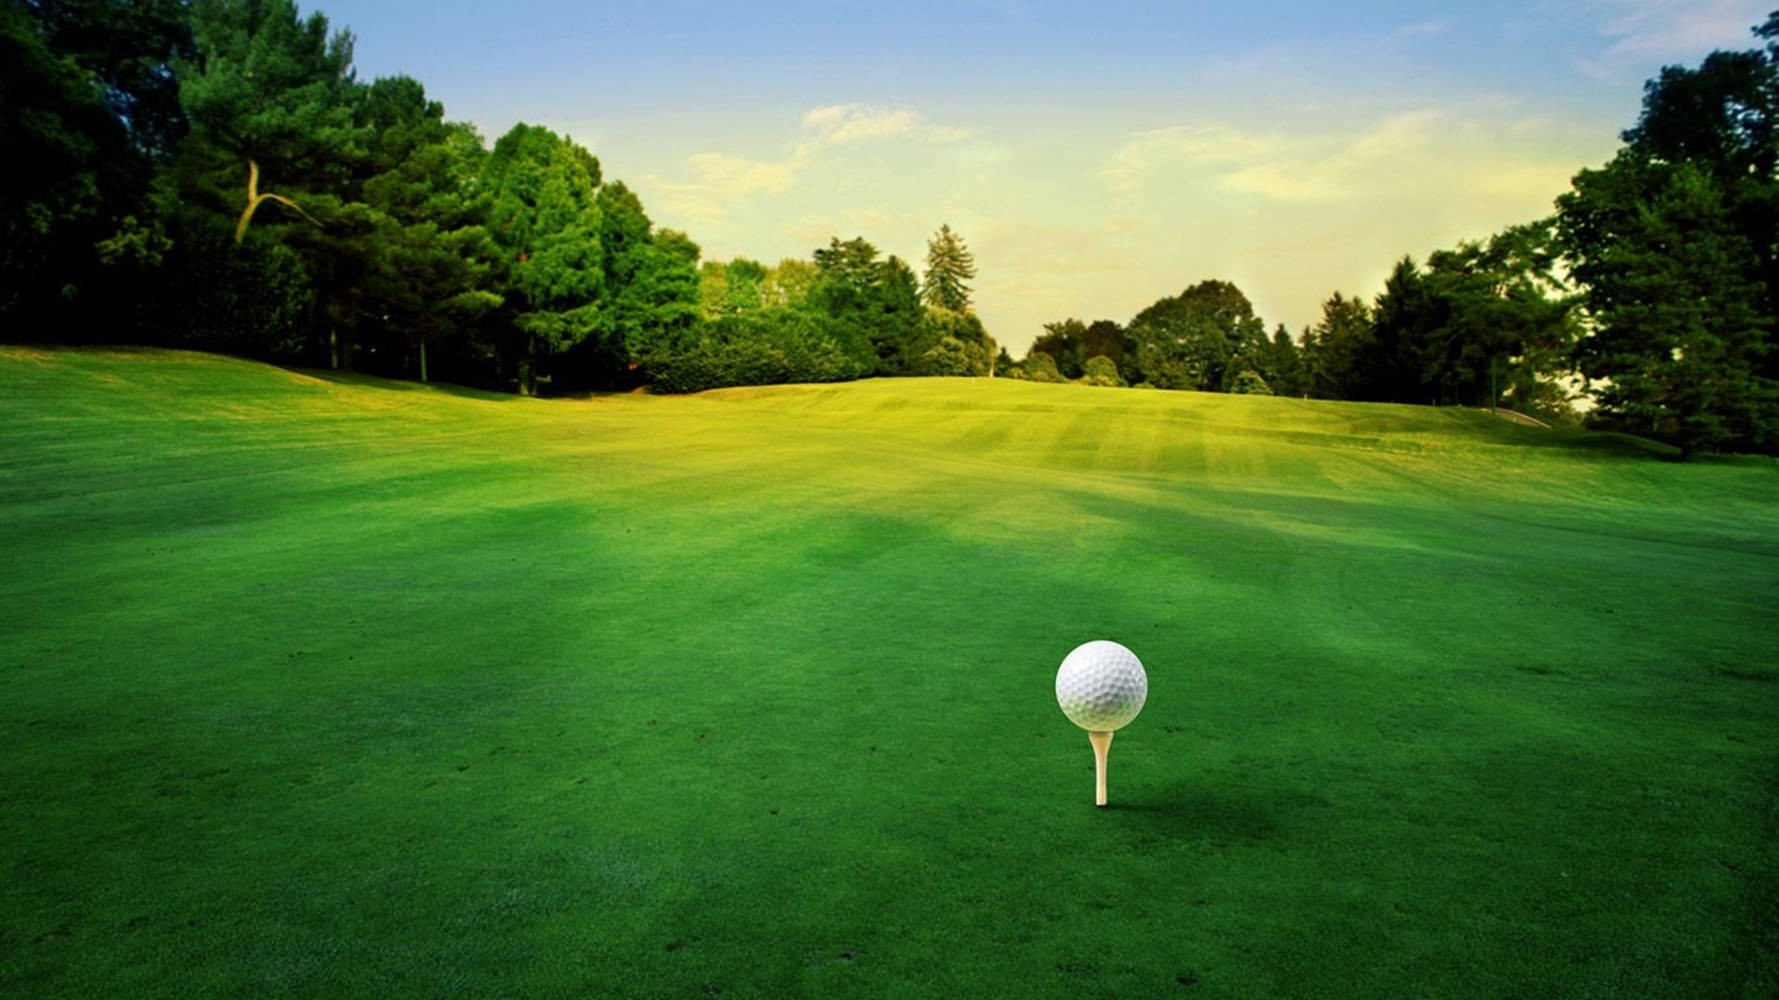 Cool Golf Grøn Kursus Med Teeing Grunde Wallpaper